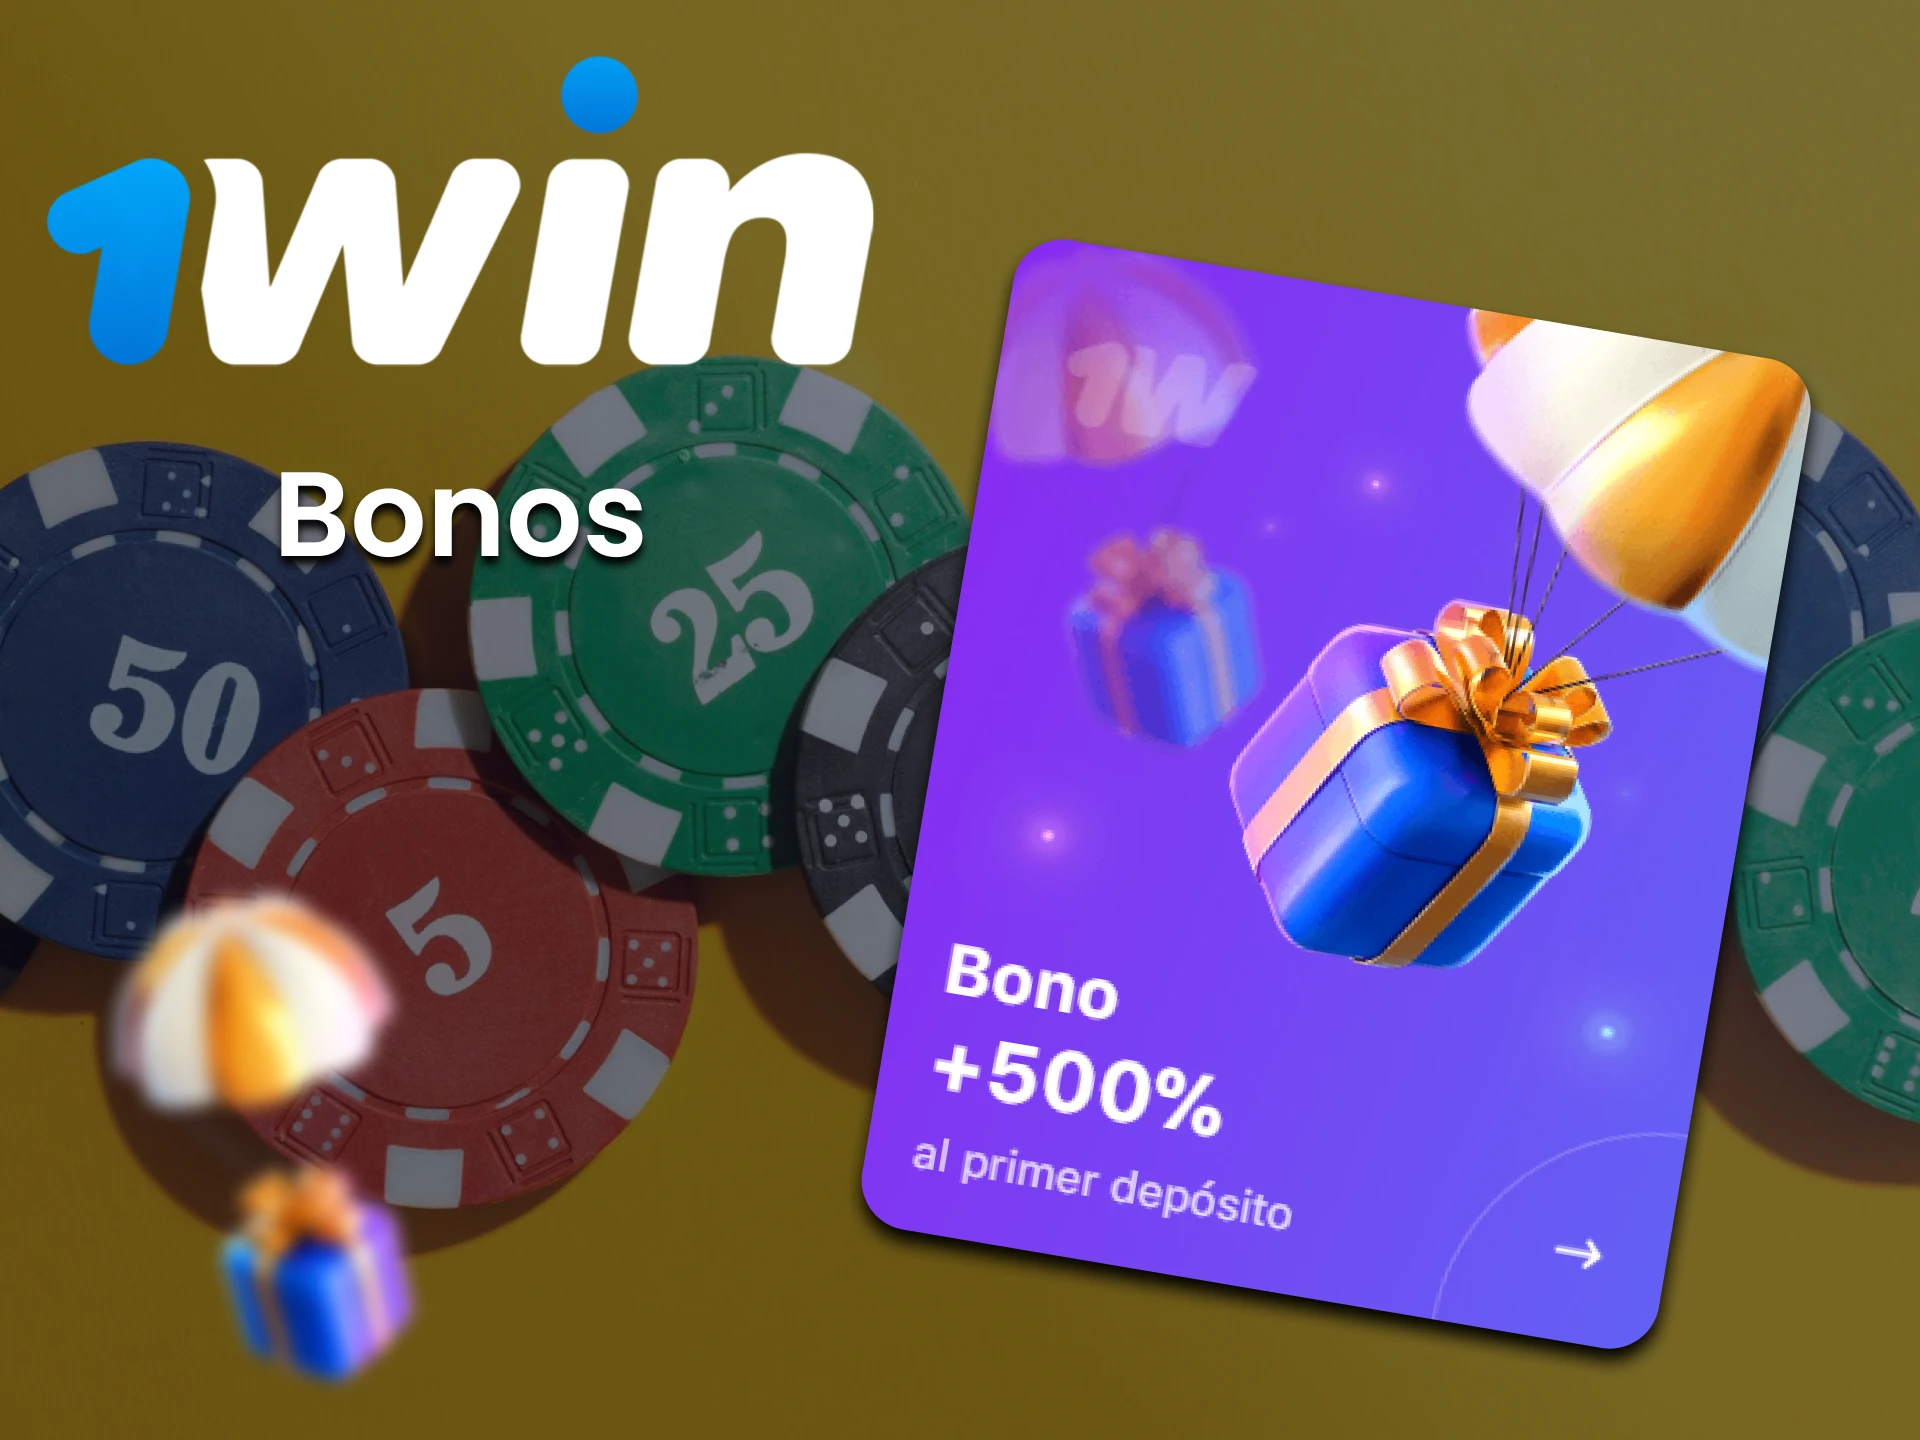 Obtenga un bono de 1win para jugar en el casino.